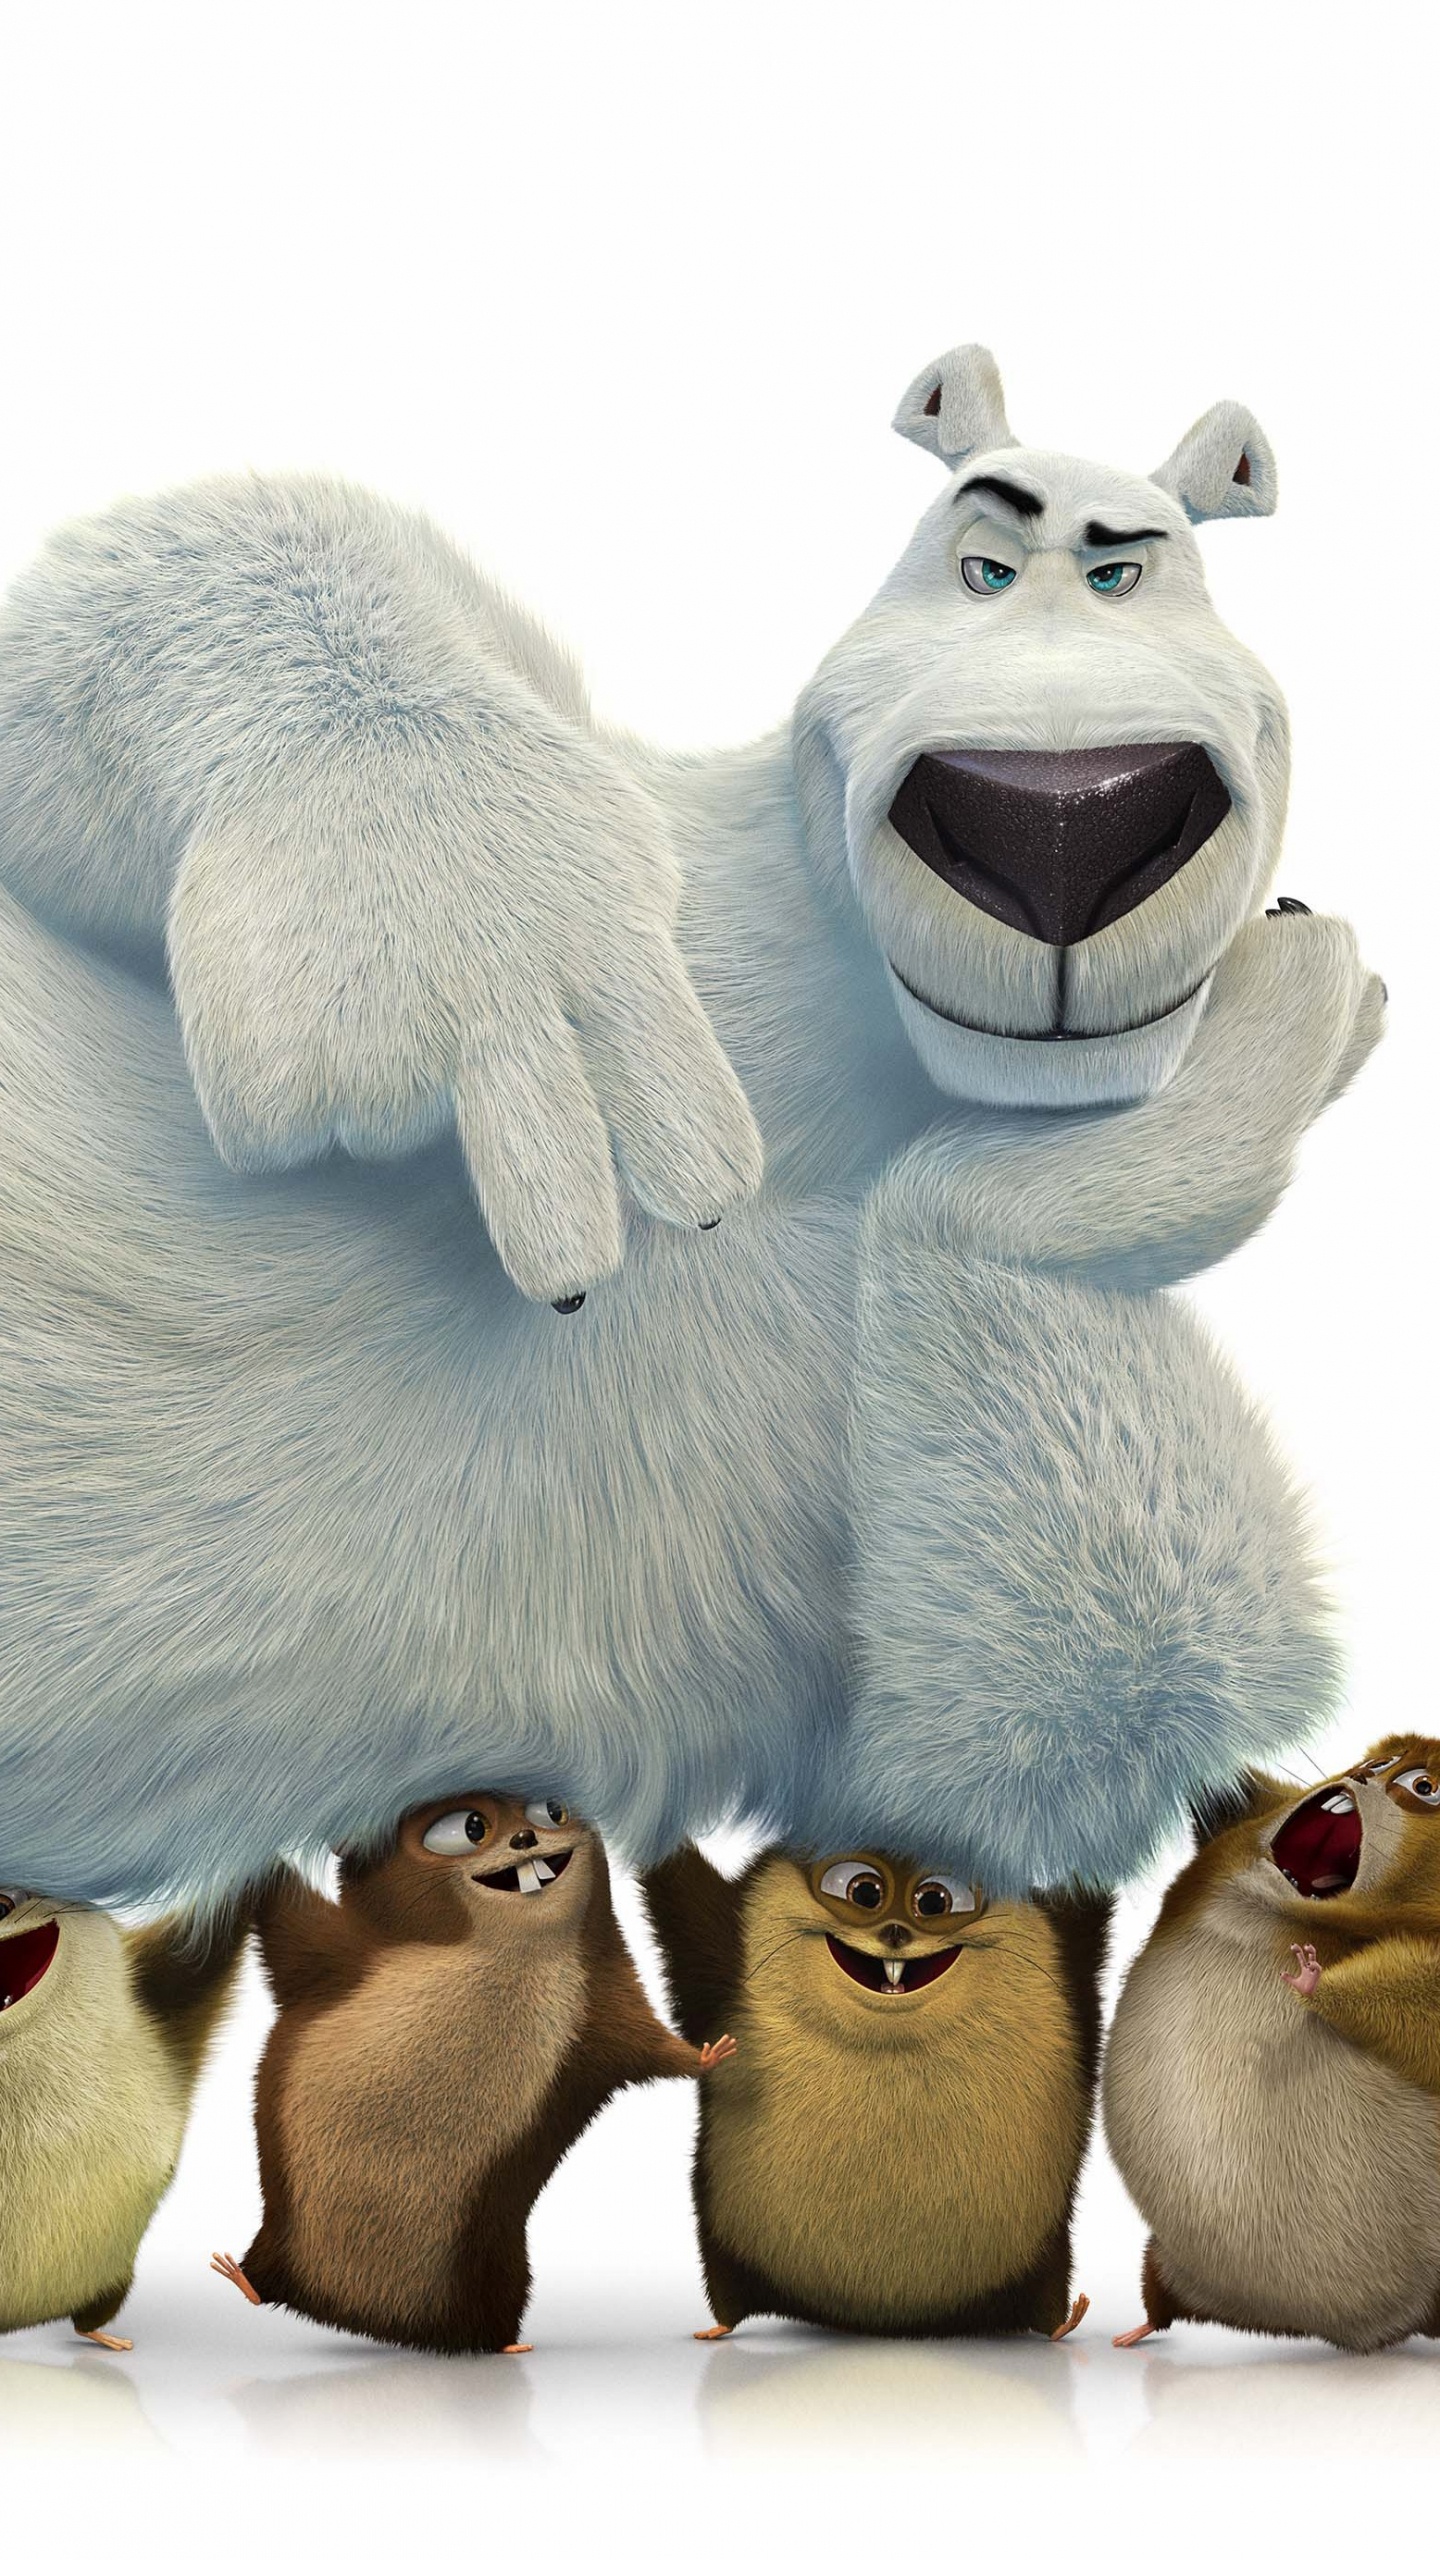 北极熊, 毛绒玩具, 动画, 毛绒, 电影 壁纸 1440x2560 允许